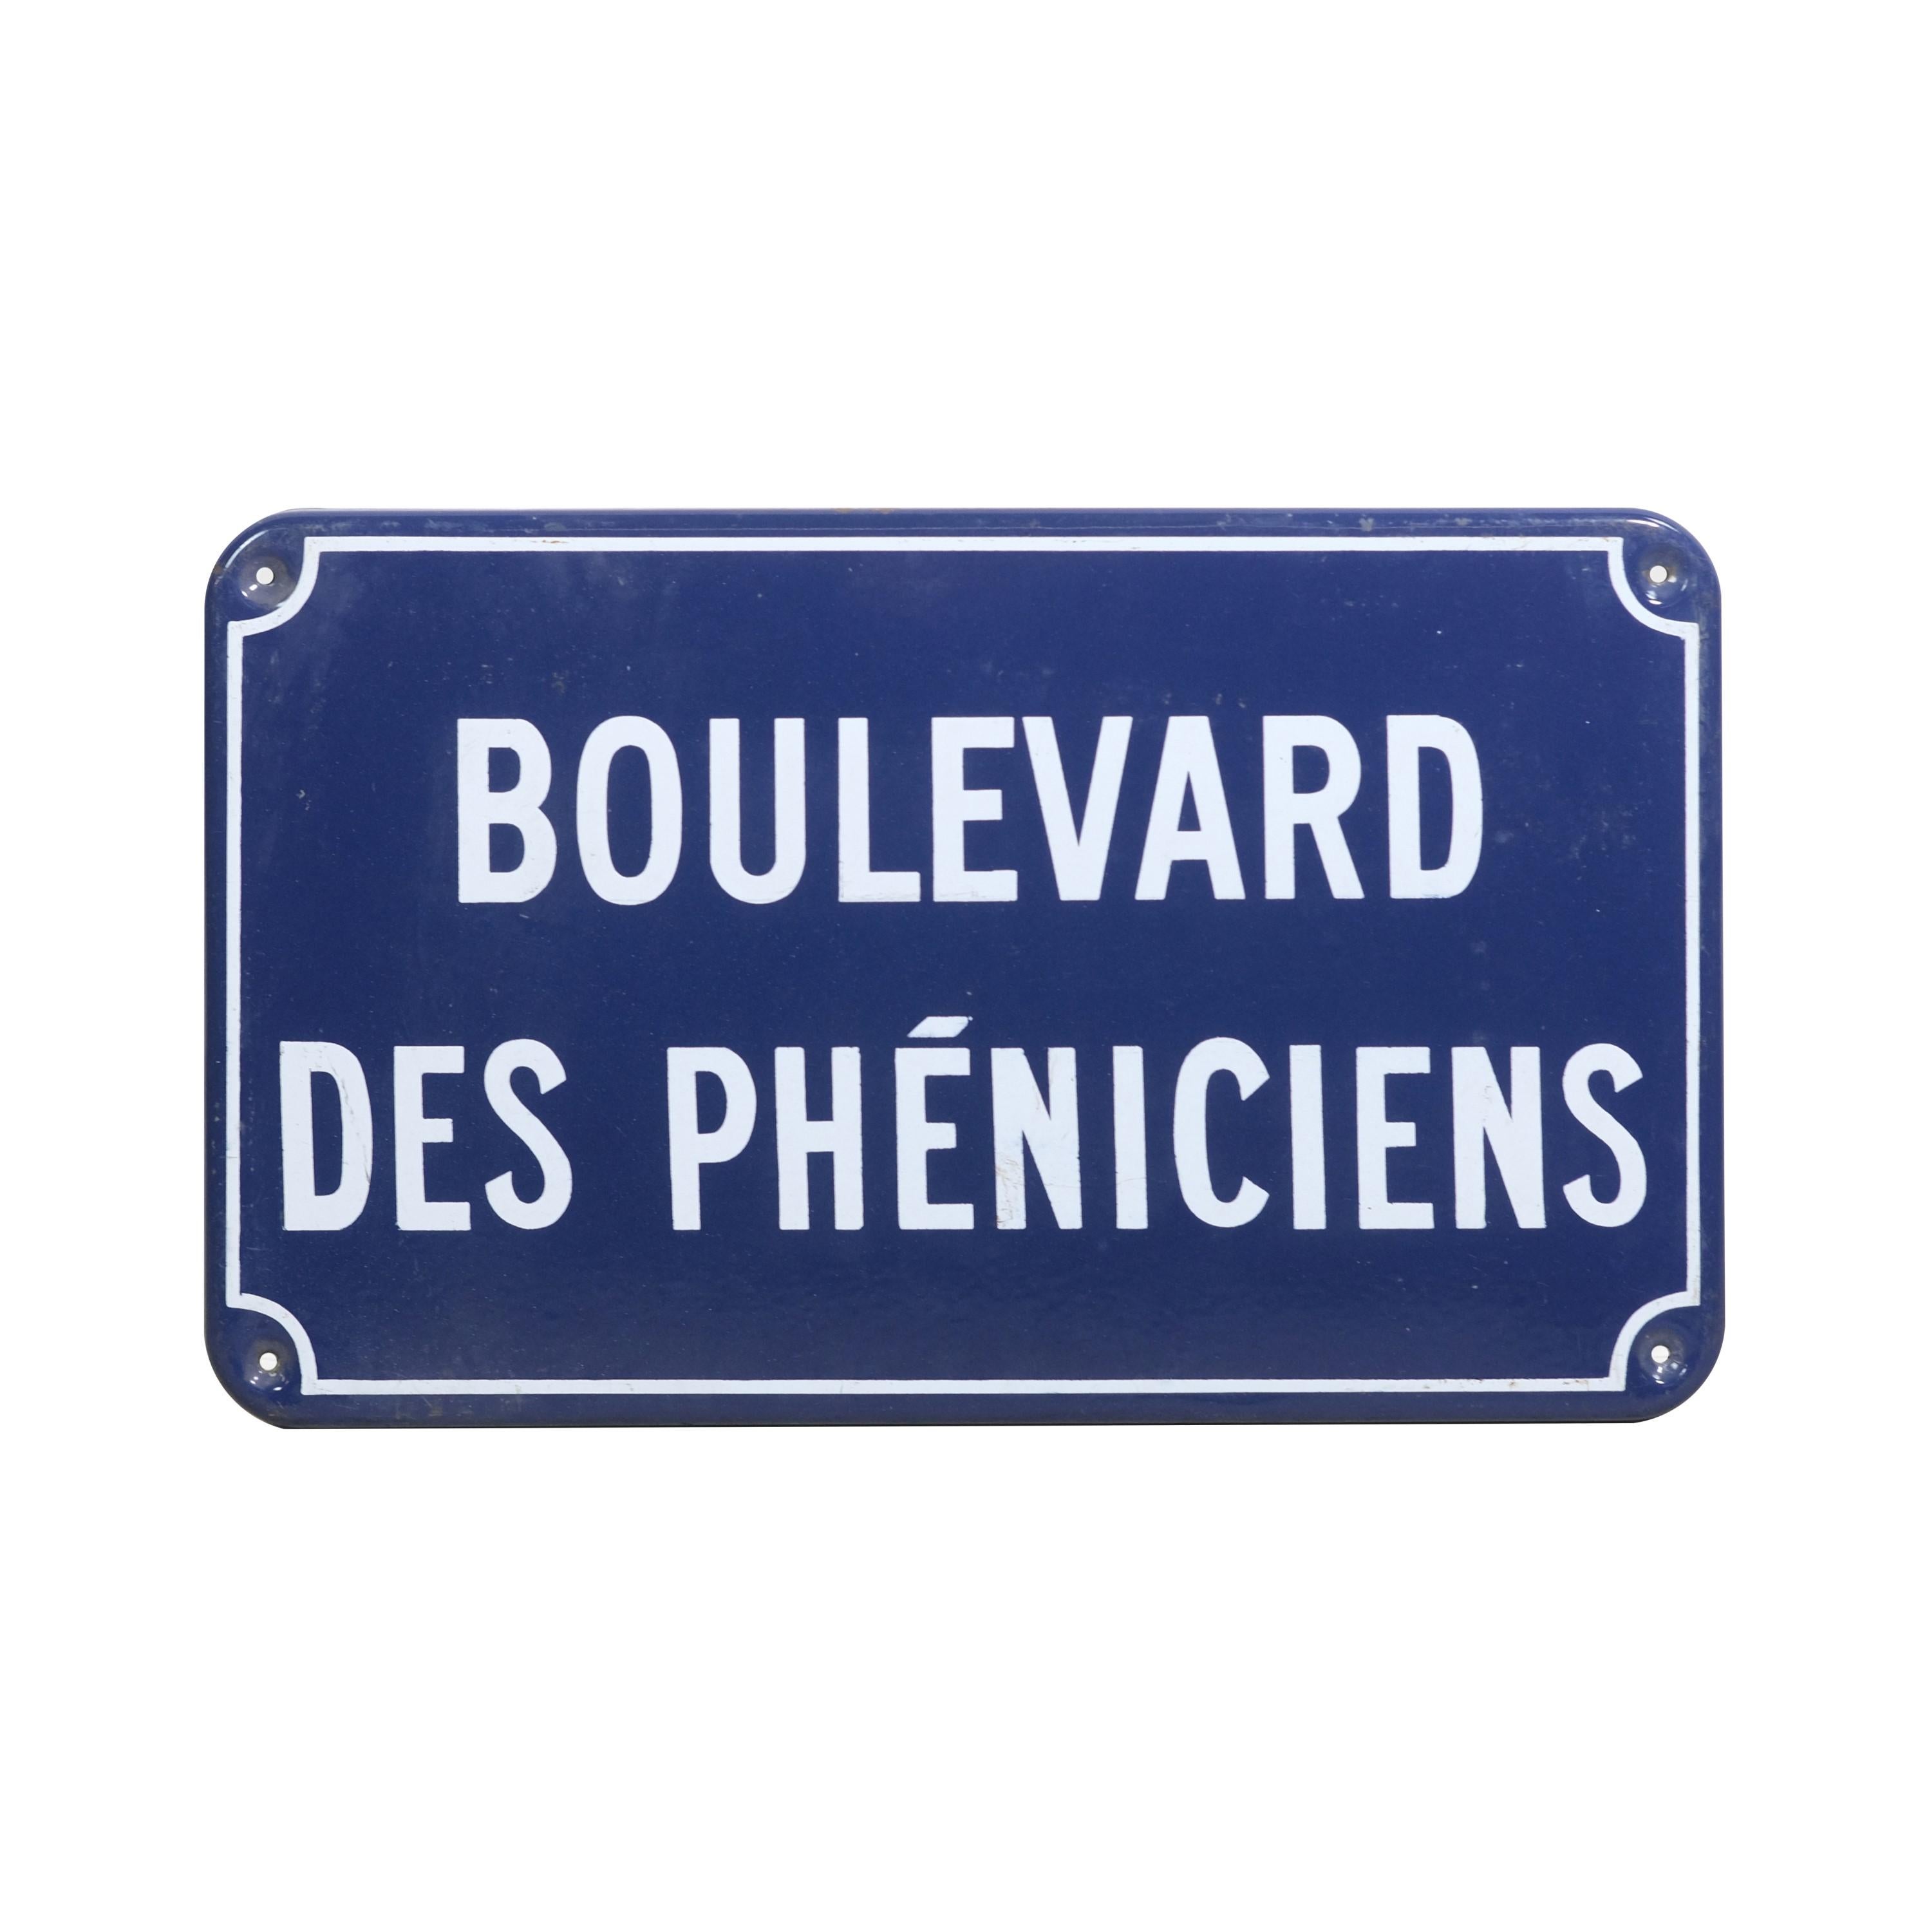 Straßenschild aus dem Frankreich des 20. Jahrhunderts. Gefertigt aus Stahl mit blauer und weißer Emaille. Auf Französisch heißt 